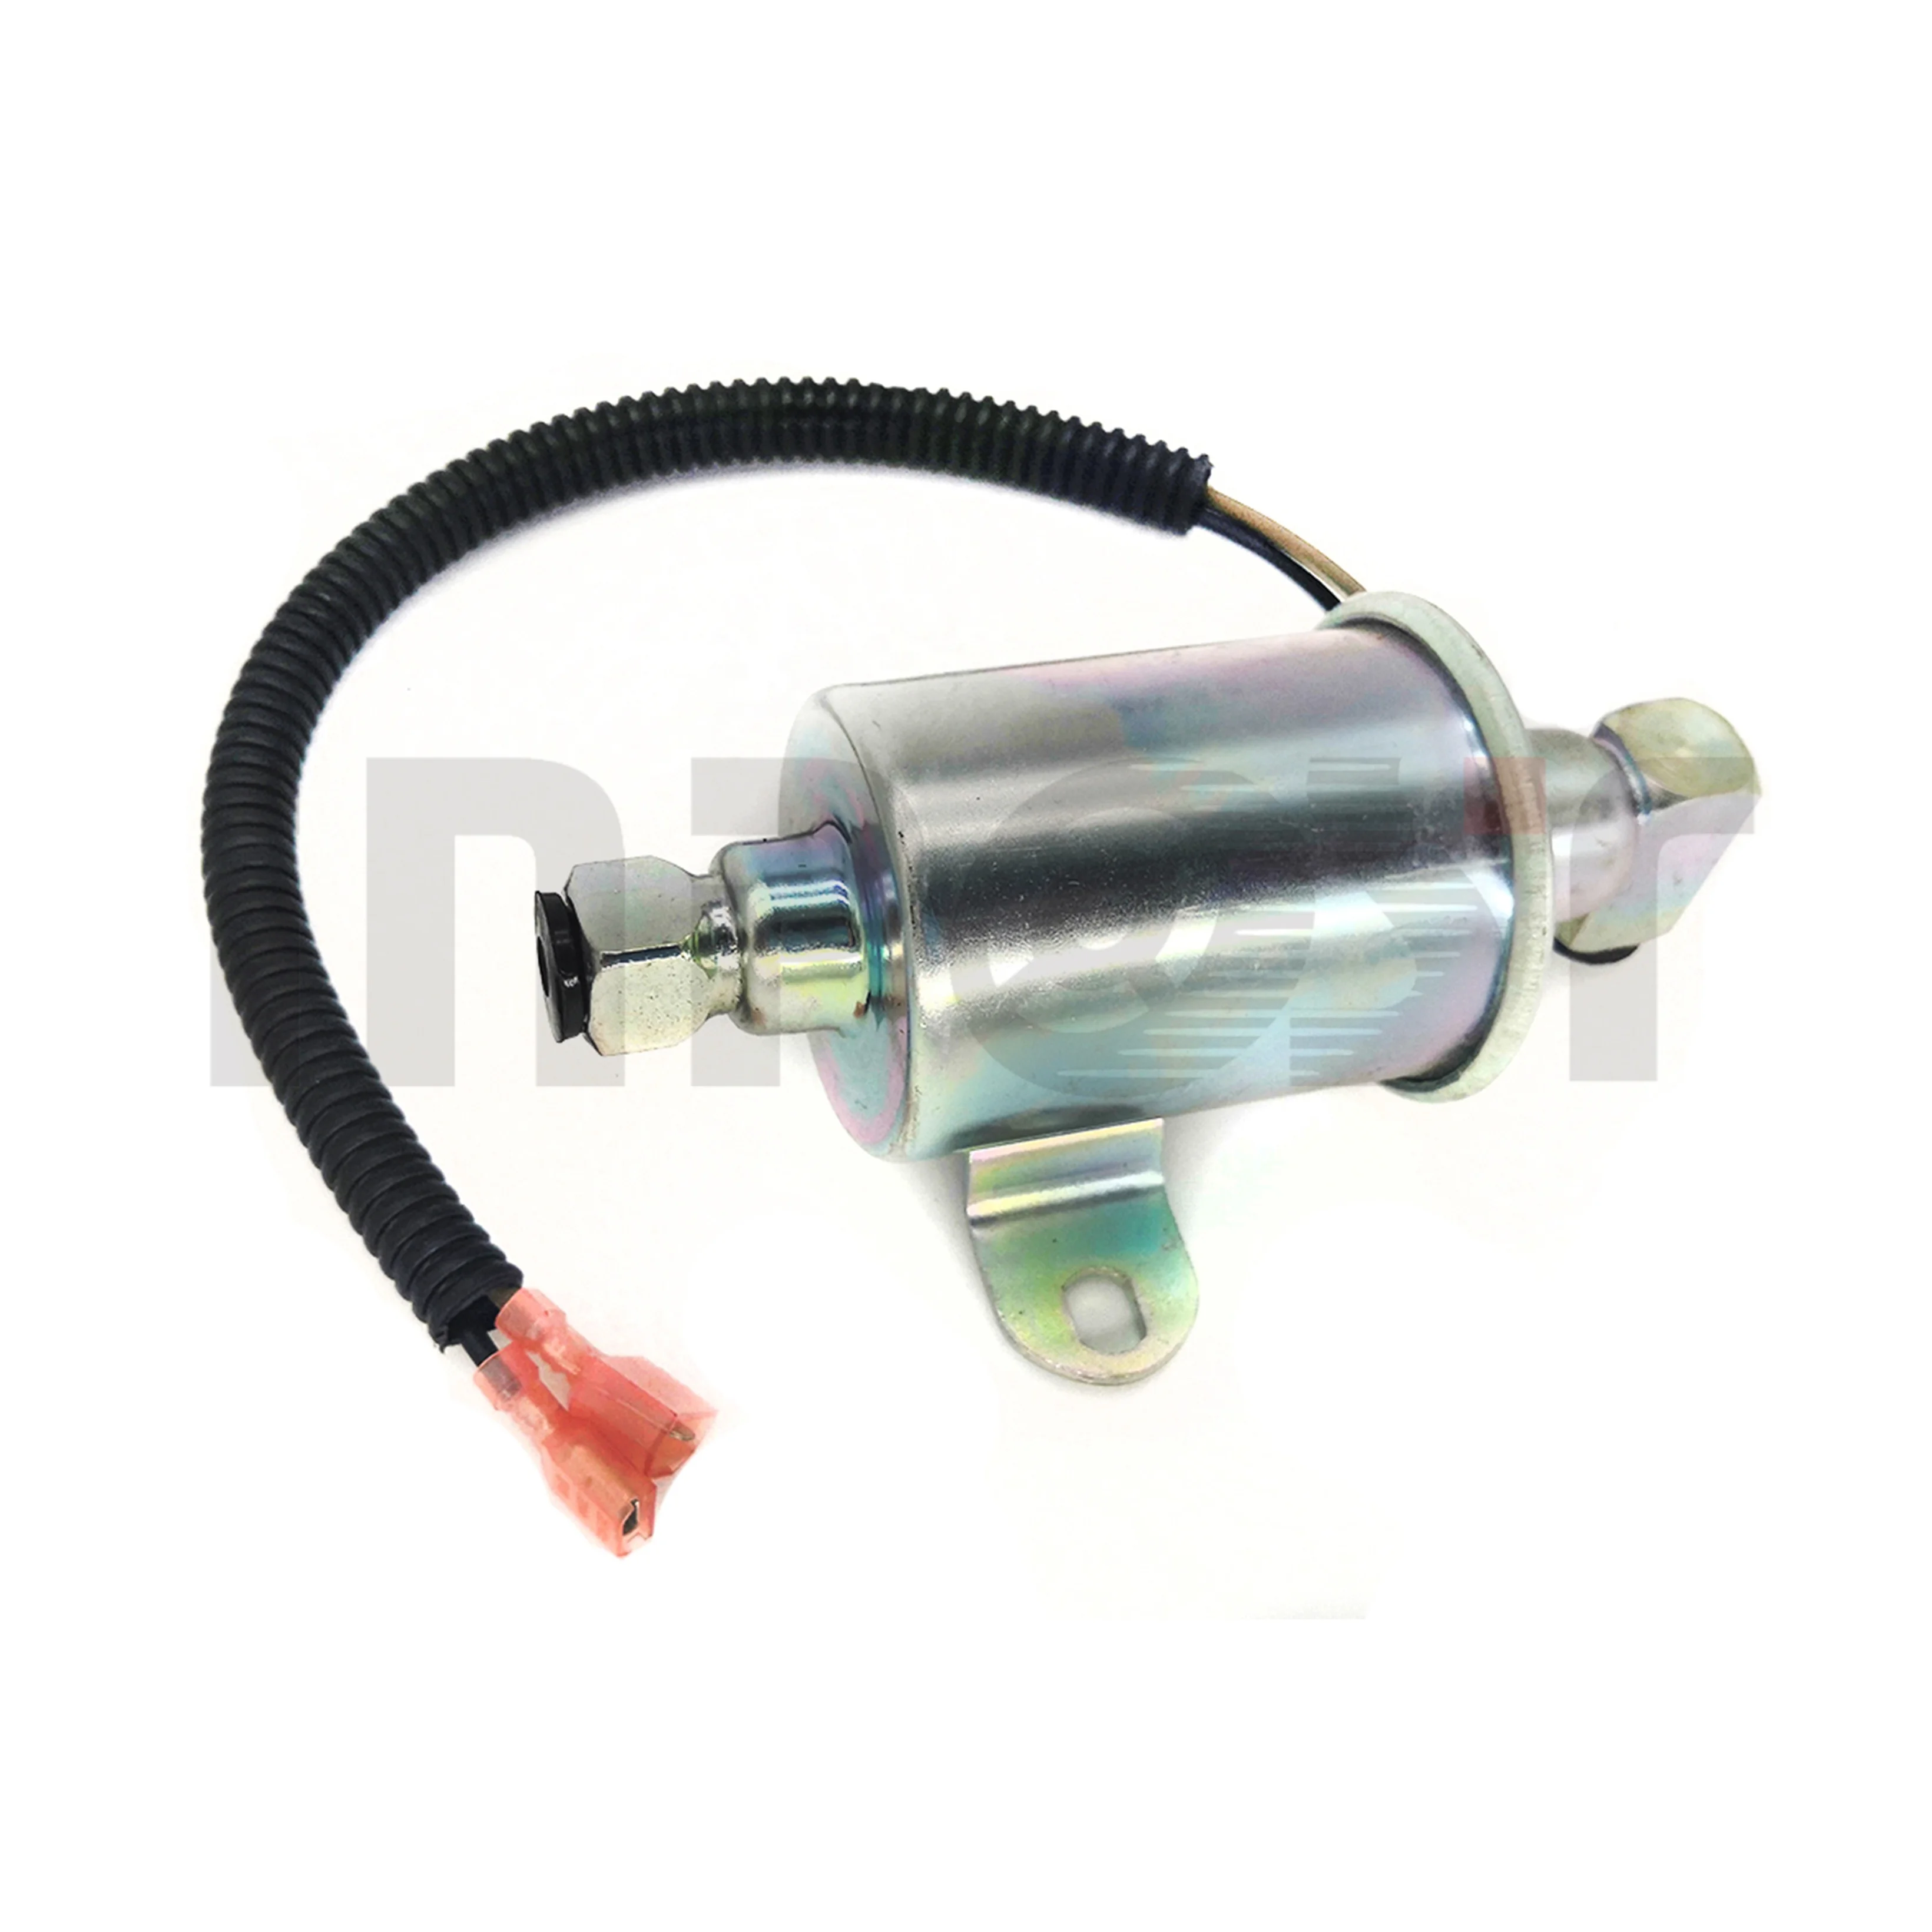 New Electrical Fuel Pump for Onan Cummins 149-2620 A029F887 A047N929 